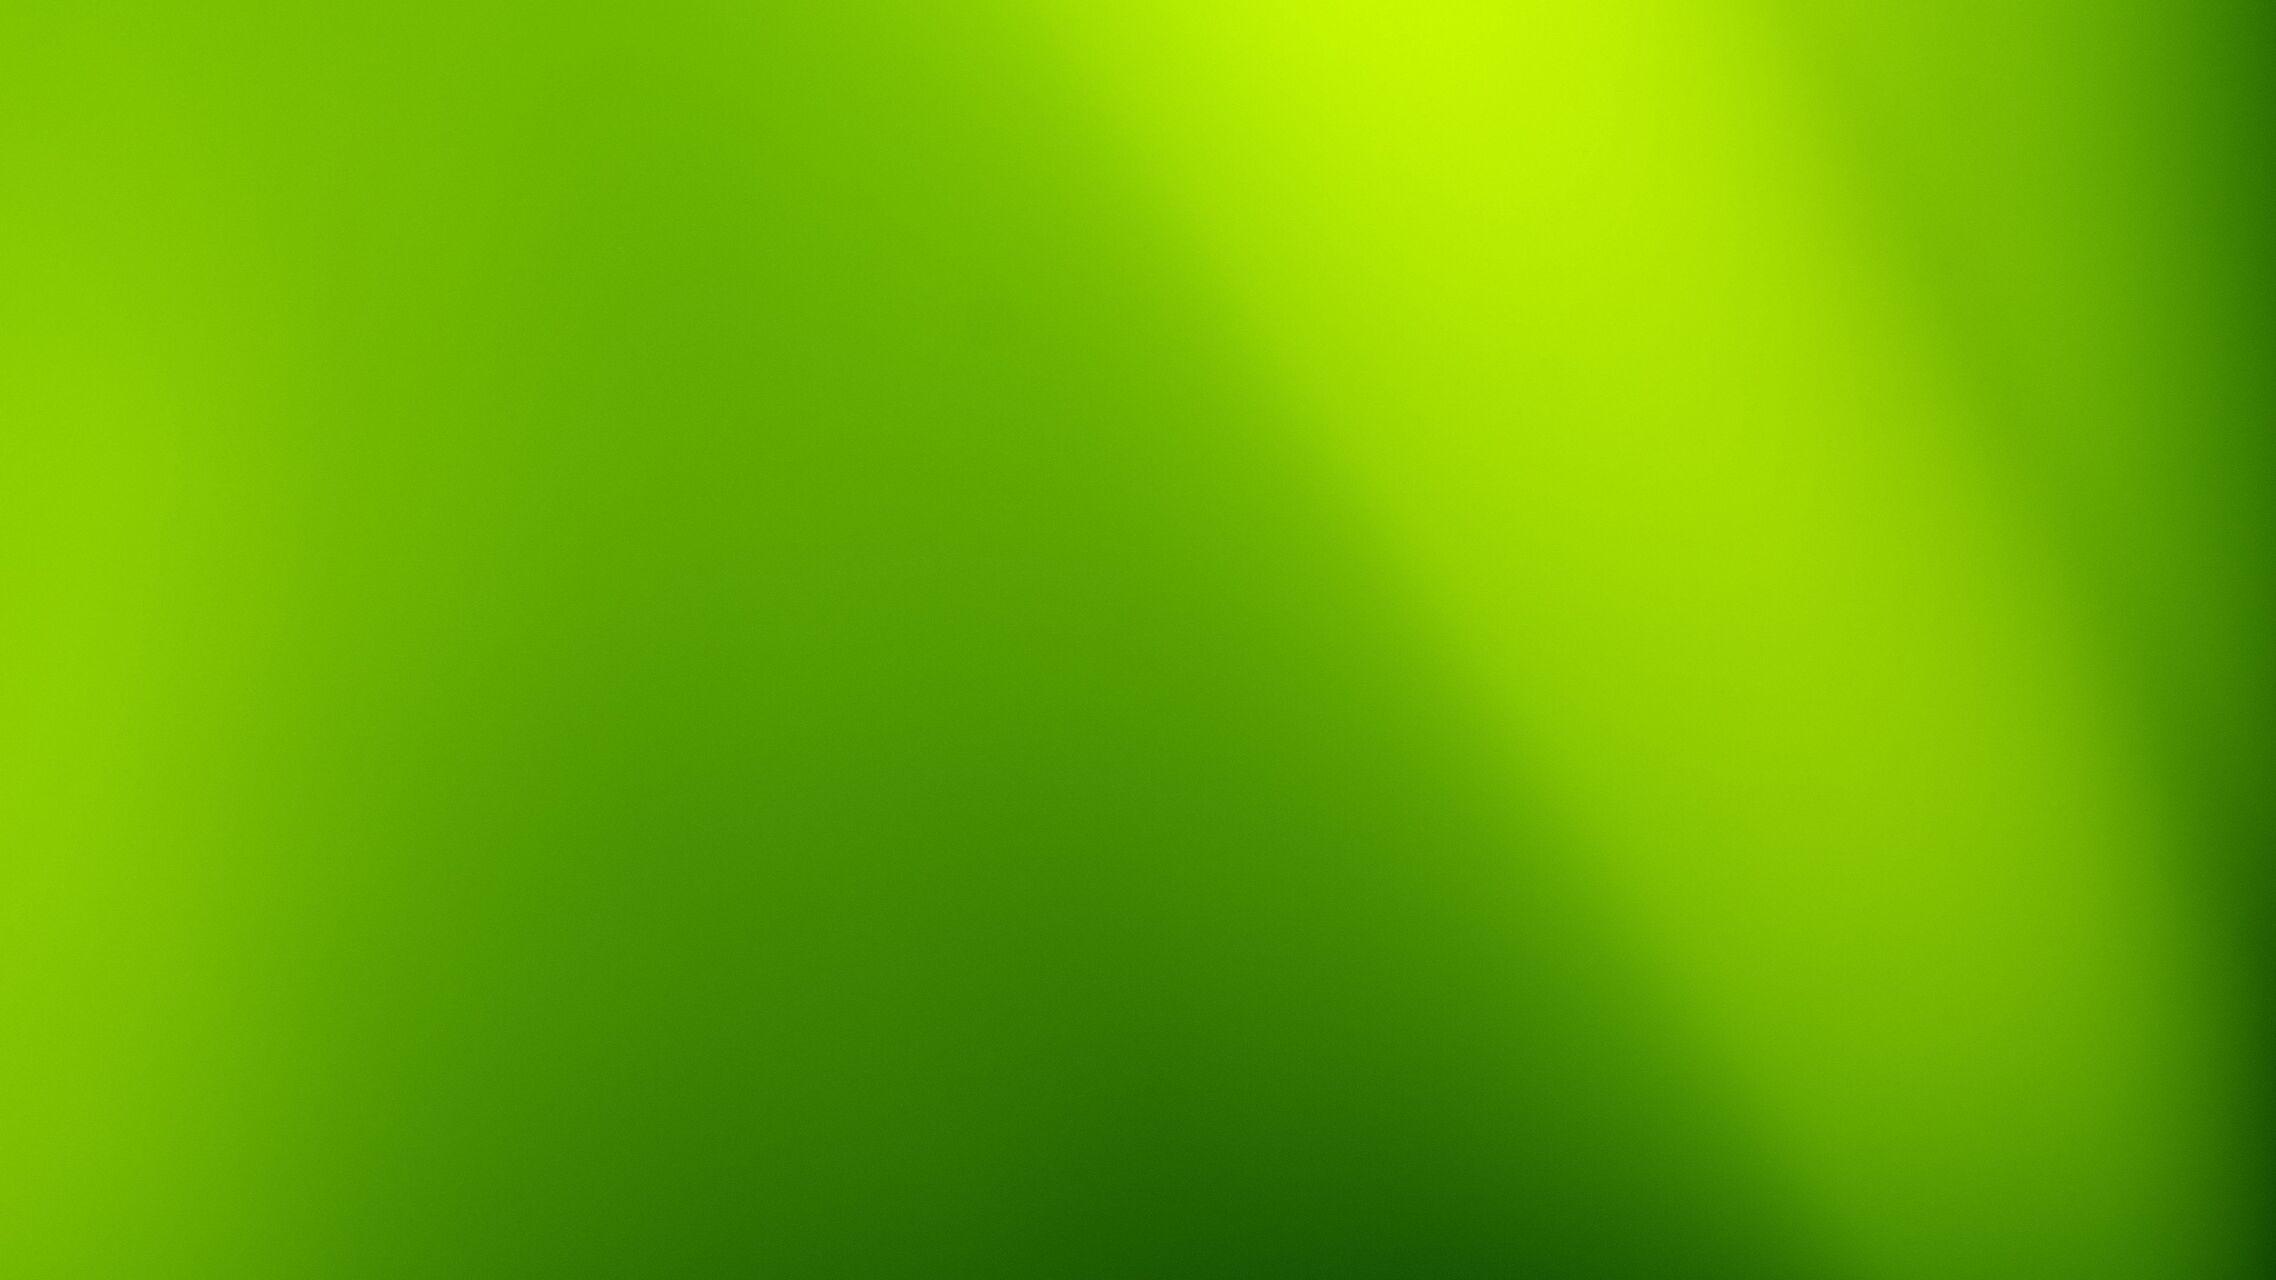 Nền xanh lá cây: Từng mét vuông đất được xanh biếc bao phủ, hình thành không gian sống sạch và trong lành. Những cây xanh mơn mởn vươn lên trời cao, trở thành biểu tượng của sự sống và sự đổi mới. Hình ảnh nền xanh lá cây sẽ mang đến cho bạn những giây phút thư giãn đầy thú vị.